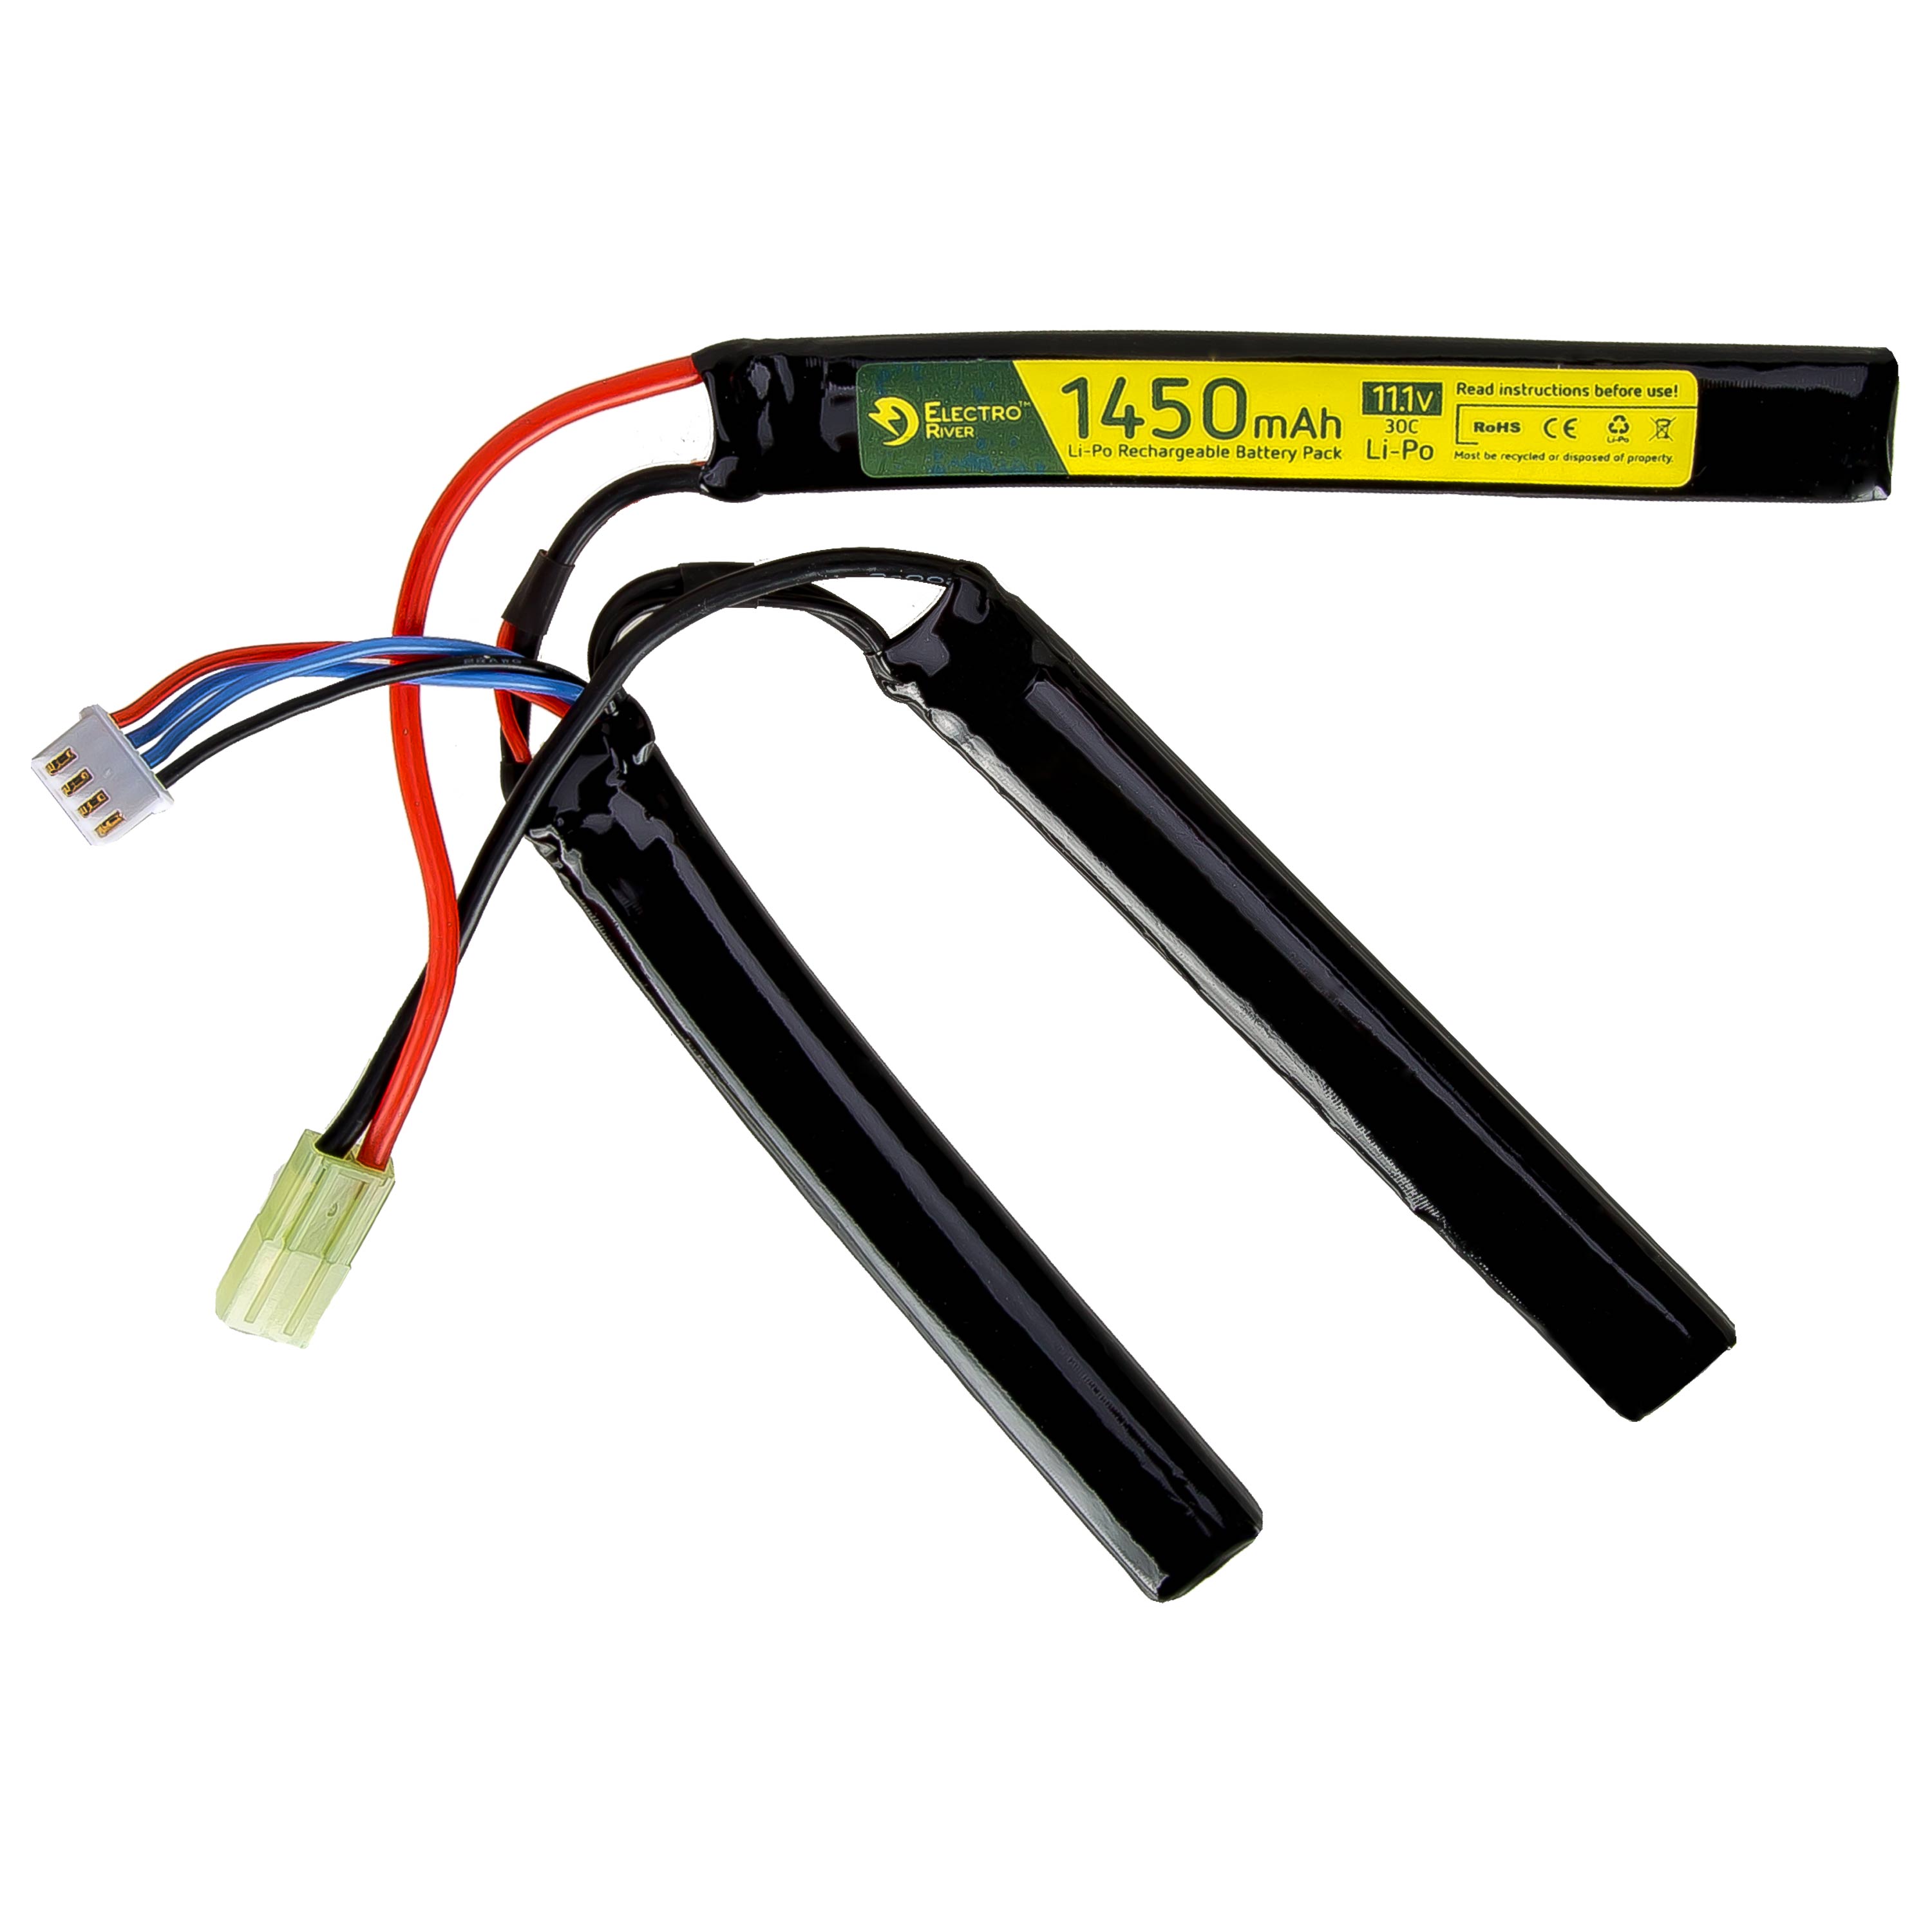 Electro River Batterie Li-Po 11.1 V 1450 mAh Triple Stick 30C